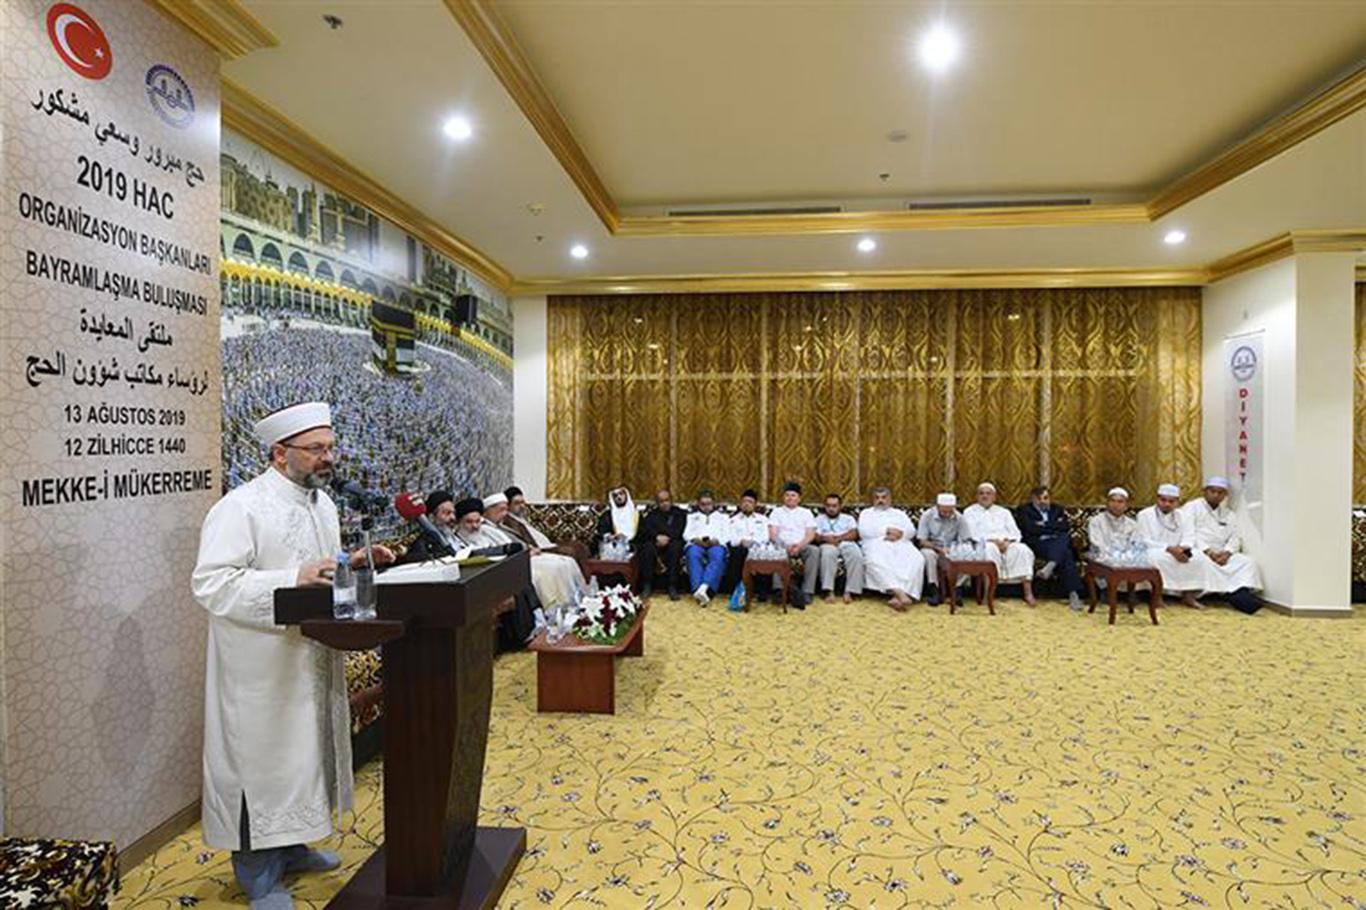 "Beraberliğimizi güçlendirdiğimizde İslam coğrafyasındaki sorunlar kolayca çözülecek"